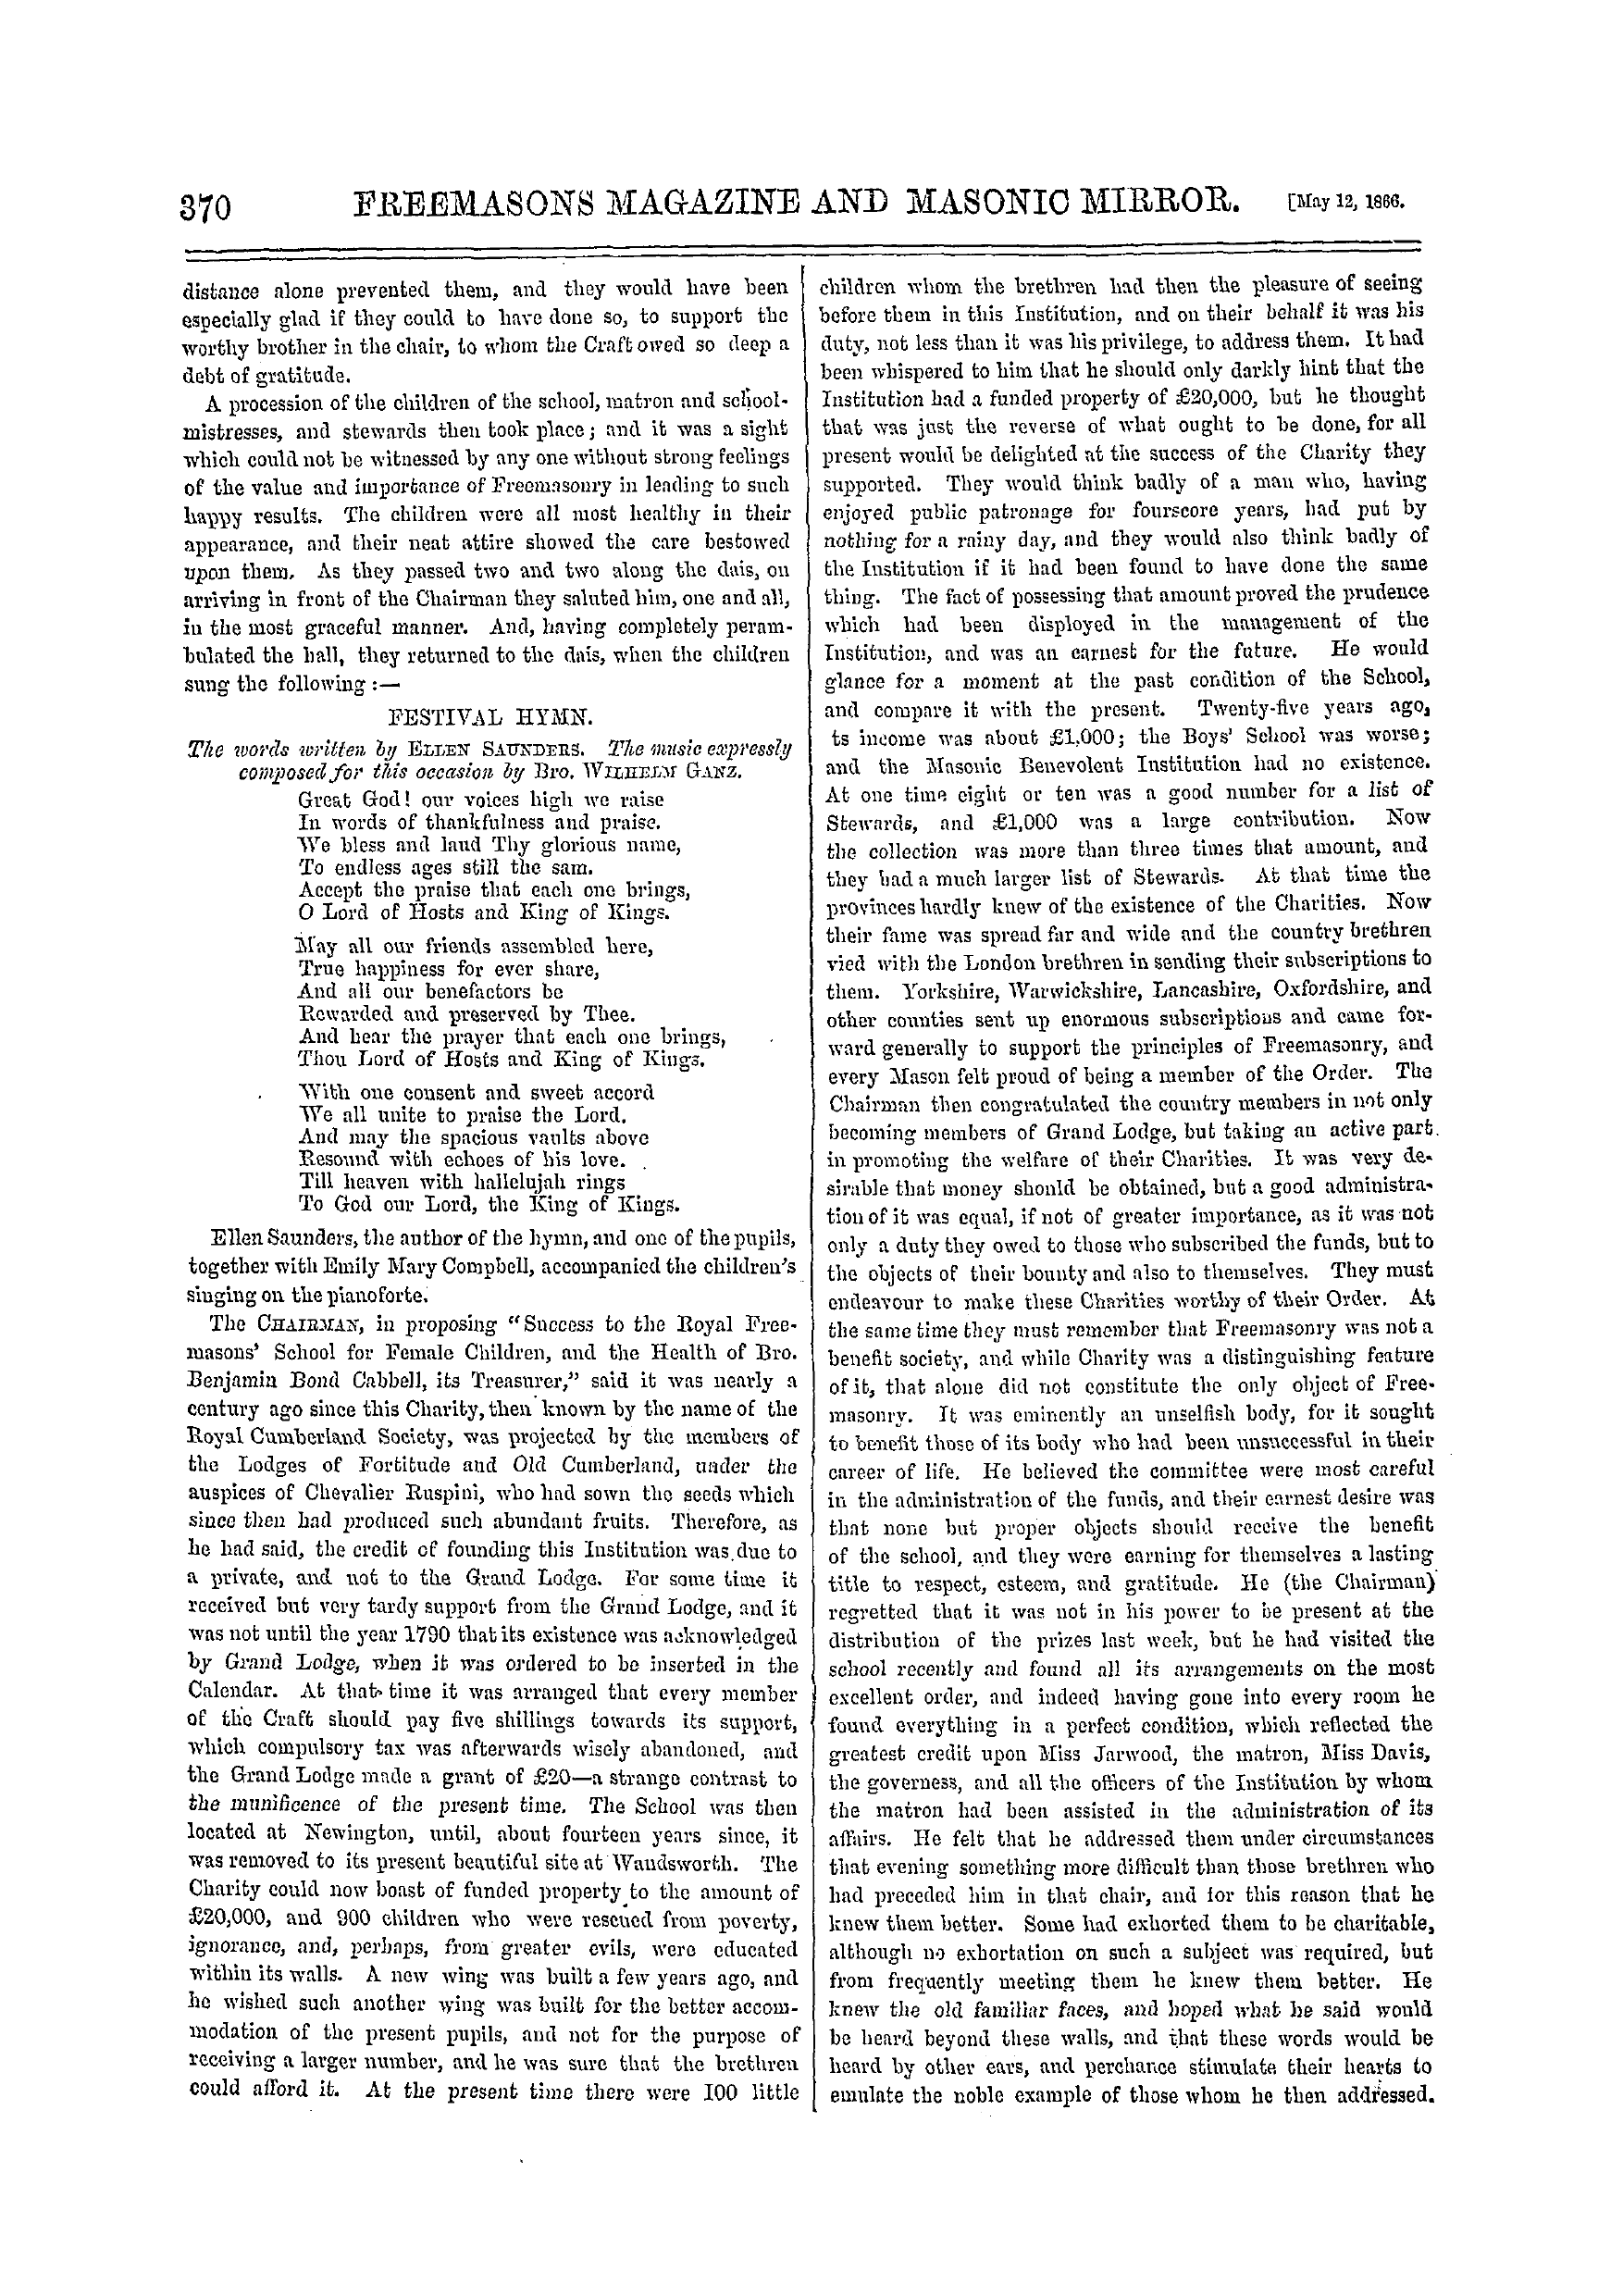 The Freemasons' Monthly Magazine: 1866-05-12: 10